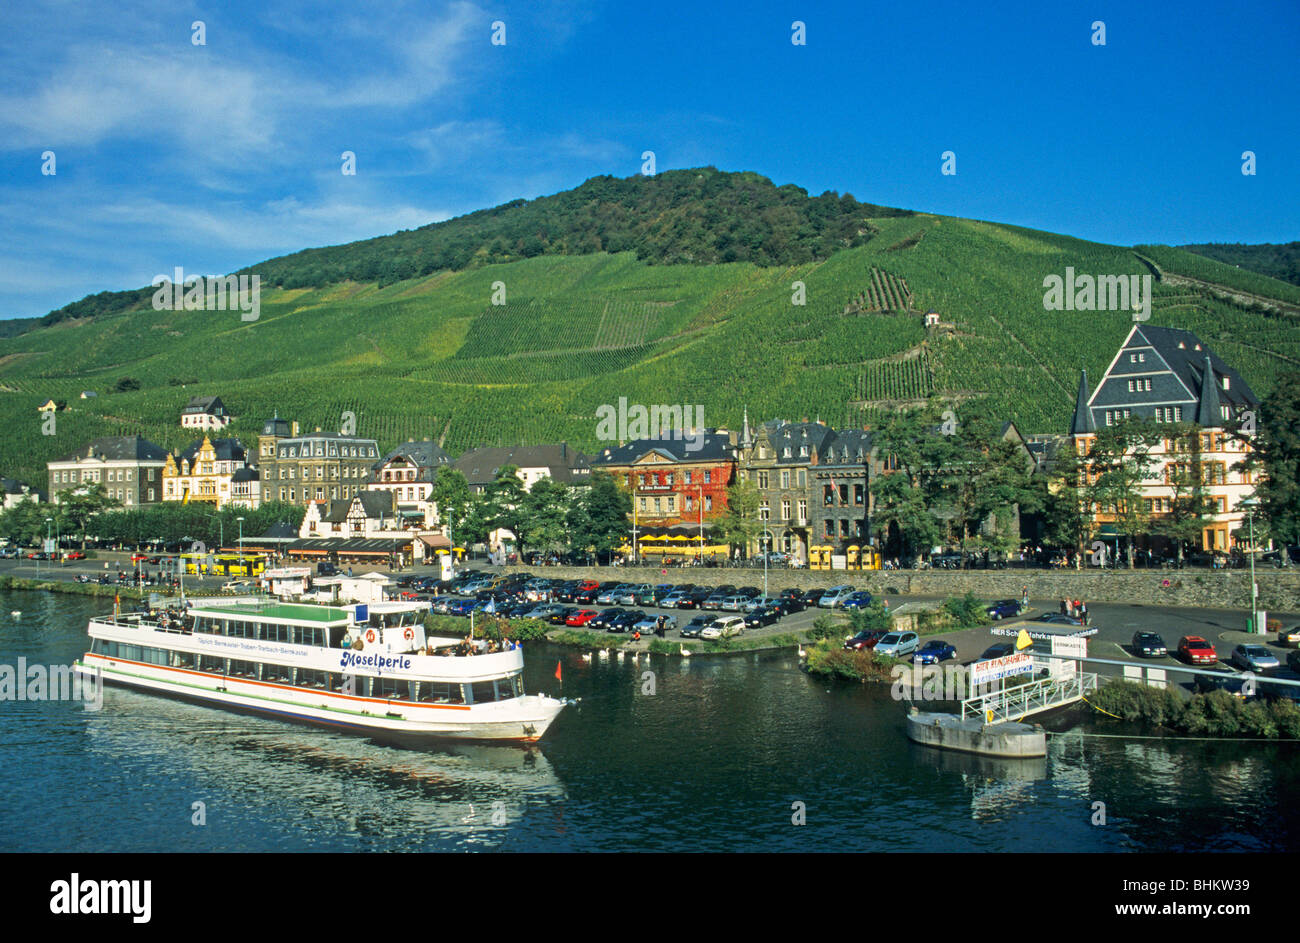 Bernkastel, River Moselle, Rhineland-Palatinate, Germany Stock Photo